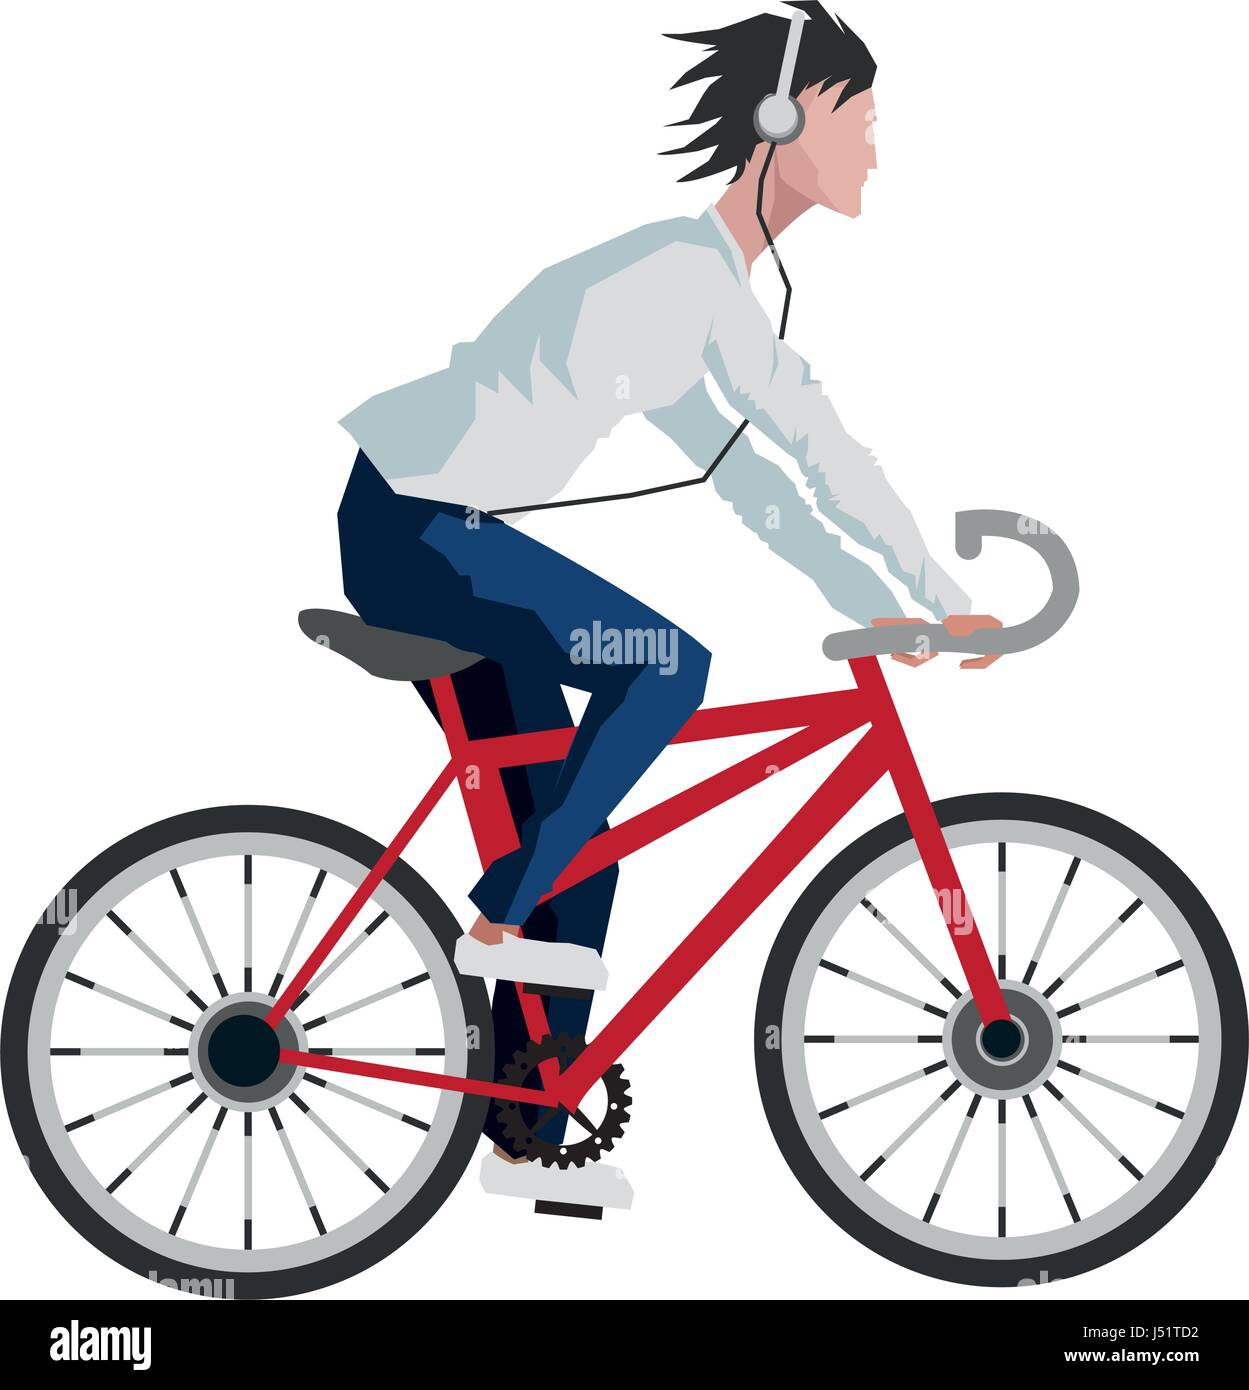 Hombre con gafas de sol en bicicleta - dibujo de ilustración vectorial  3127271 Vector en Vecteezy